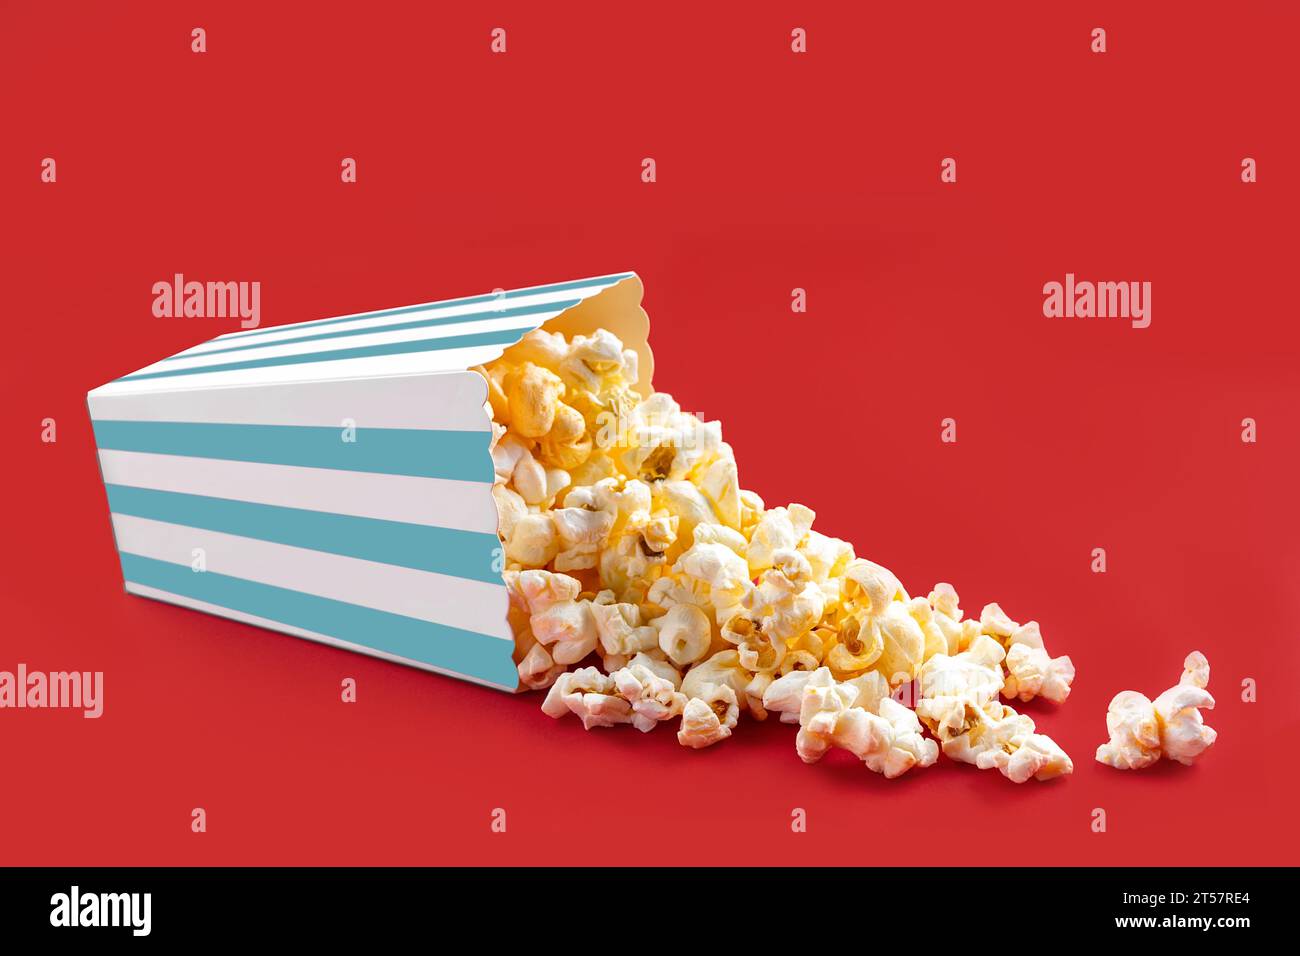 Gustosi popcorn al formaggio che cadono da una scatola di cartone a righe turchesi o da un secchio, isolato su sfondo rosso. Dispersione di semi di popcorn. Fast food, sna Foto Stock